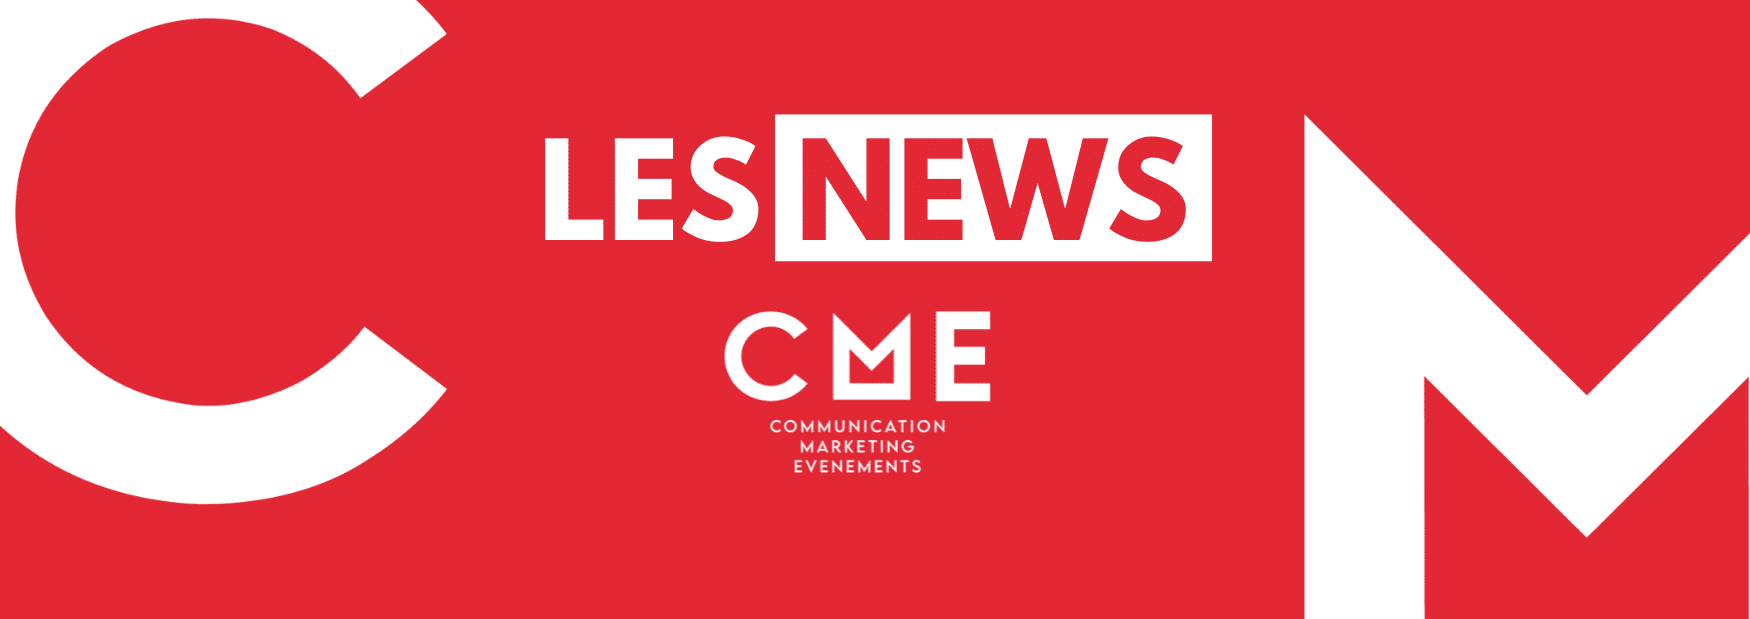 Les news CME